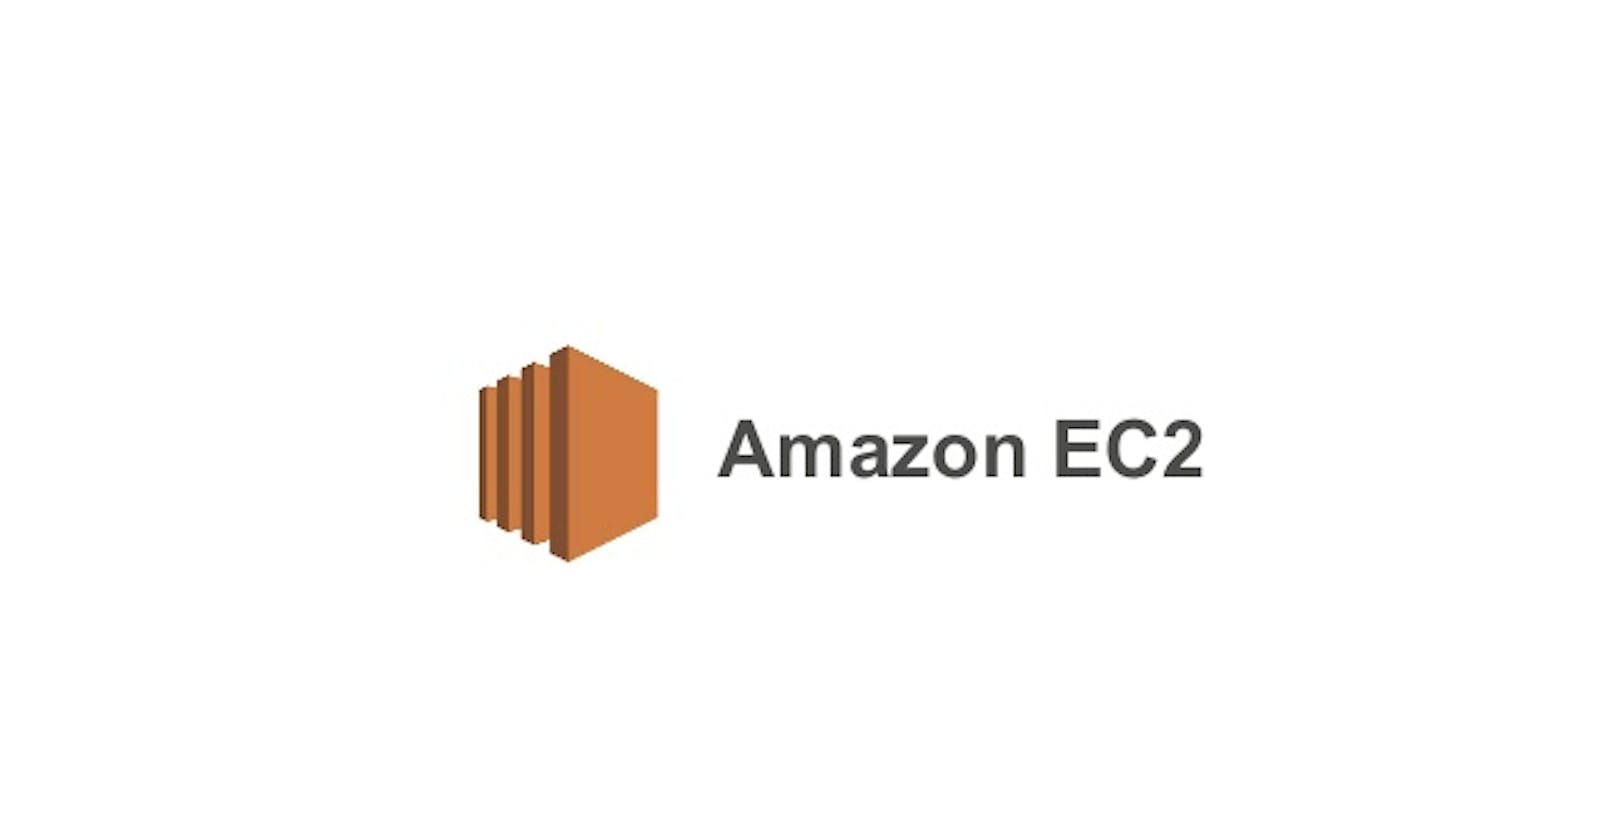 AWS EC2: Launching an Amazon EC2 instance